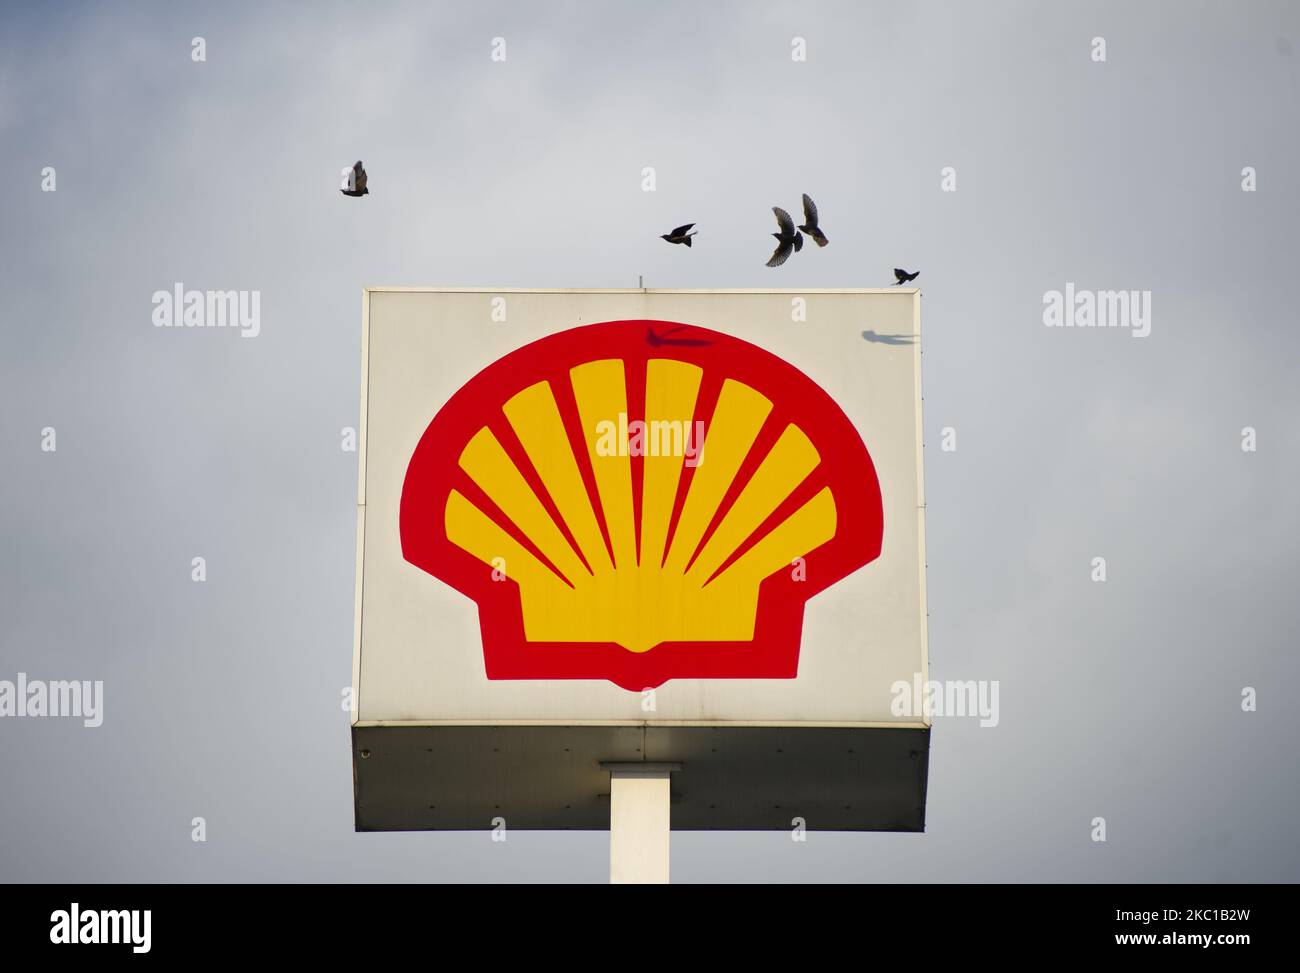 Vögel fliegen über ein britisch-niederländisches Öl- und Gasunternehmen Royal Dutch Shell Plc Schild am 7. Oktober 2020 in Warschau, Polen. Wird am 7. Oktober 2020 in Warschau, Polen, gesehen. (Foto von Aleksander Kalka/NurPhoto) Stockfoto